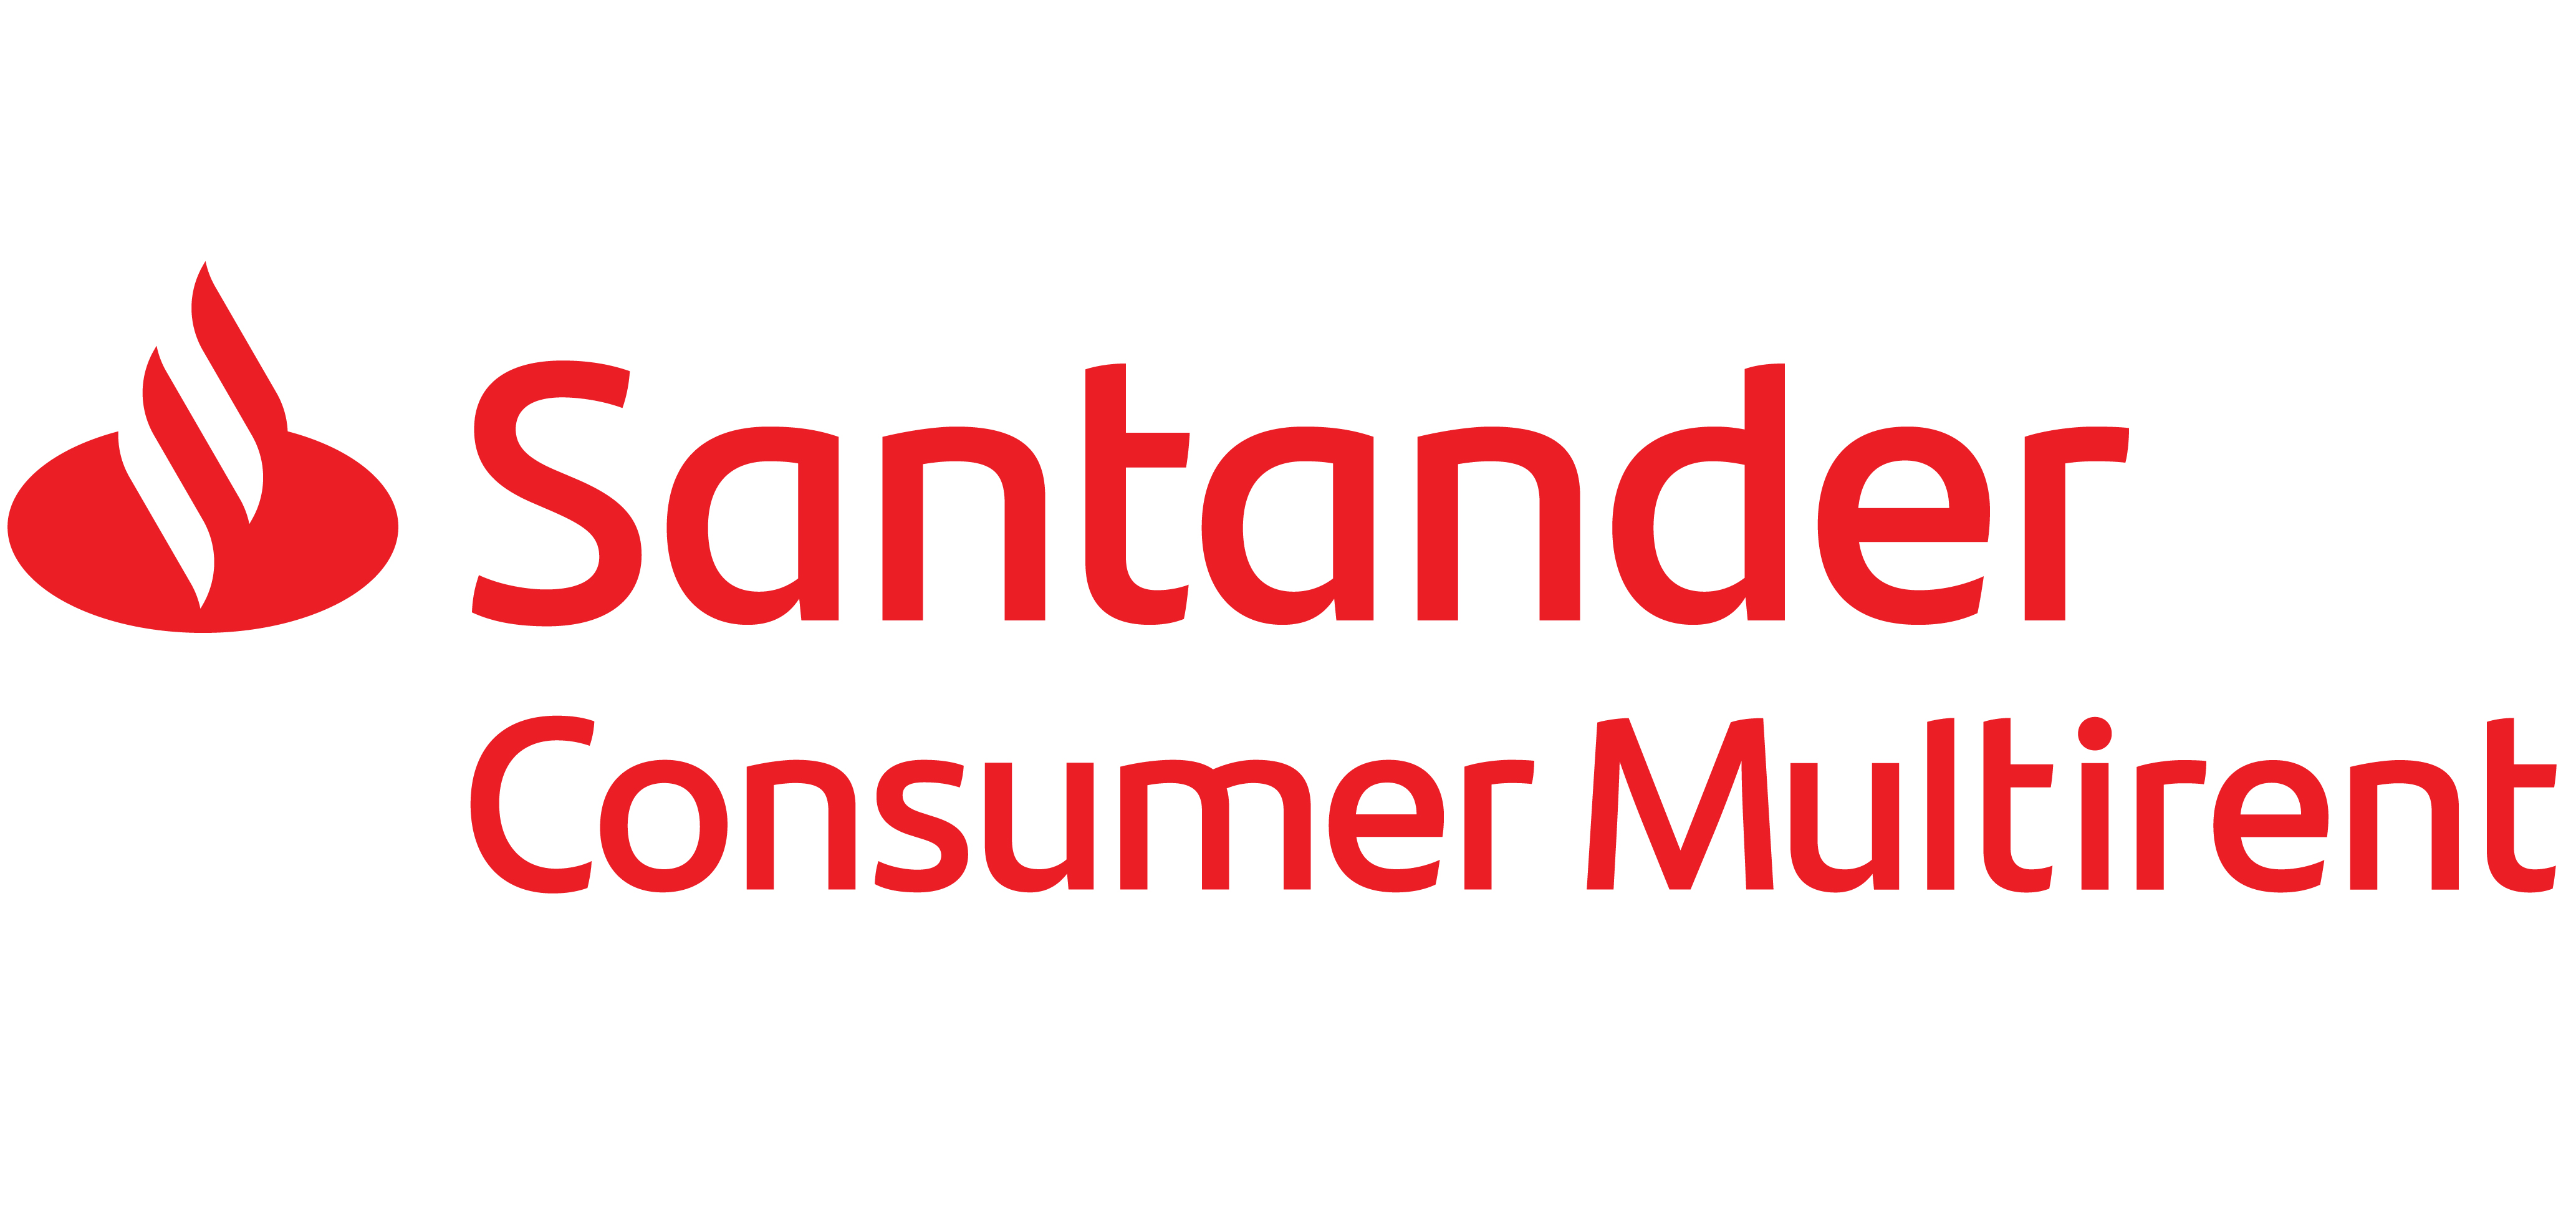 Santander_Consumer